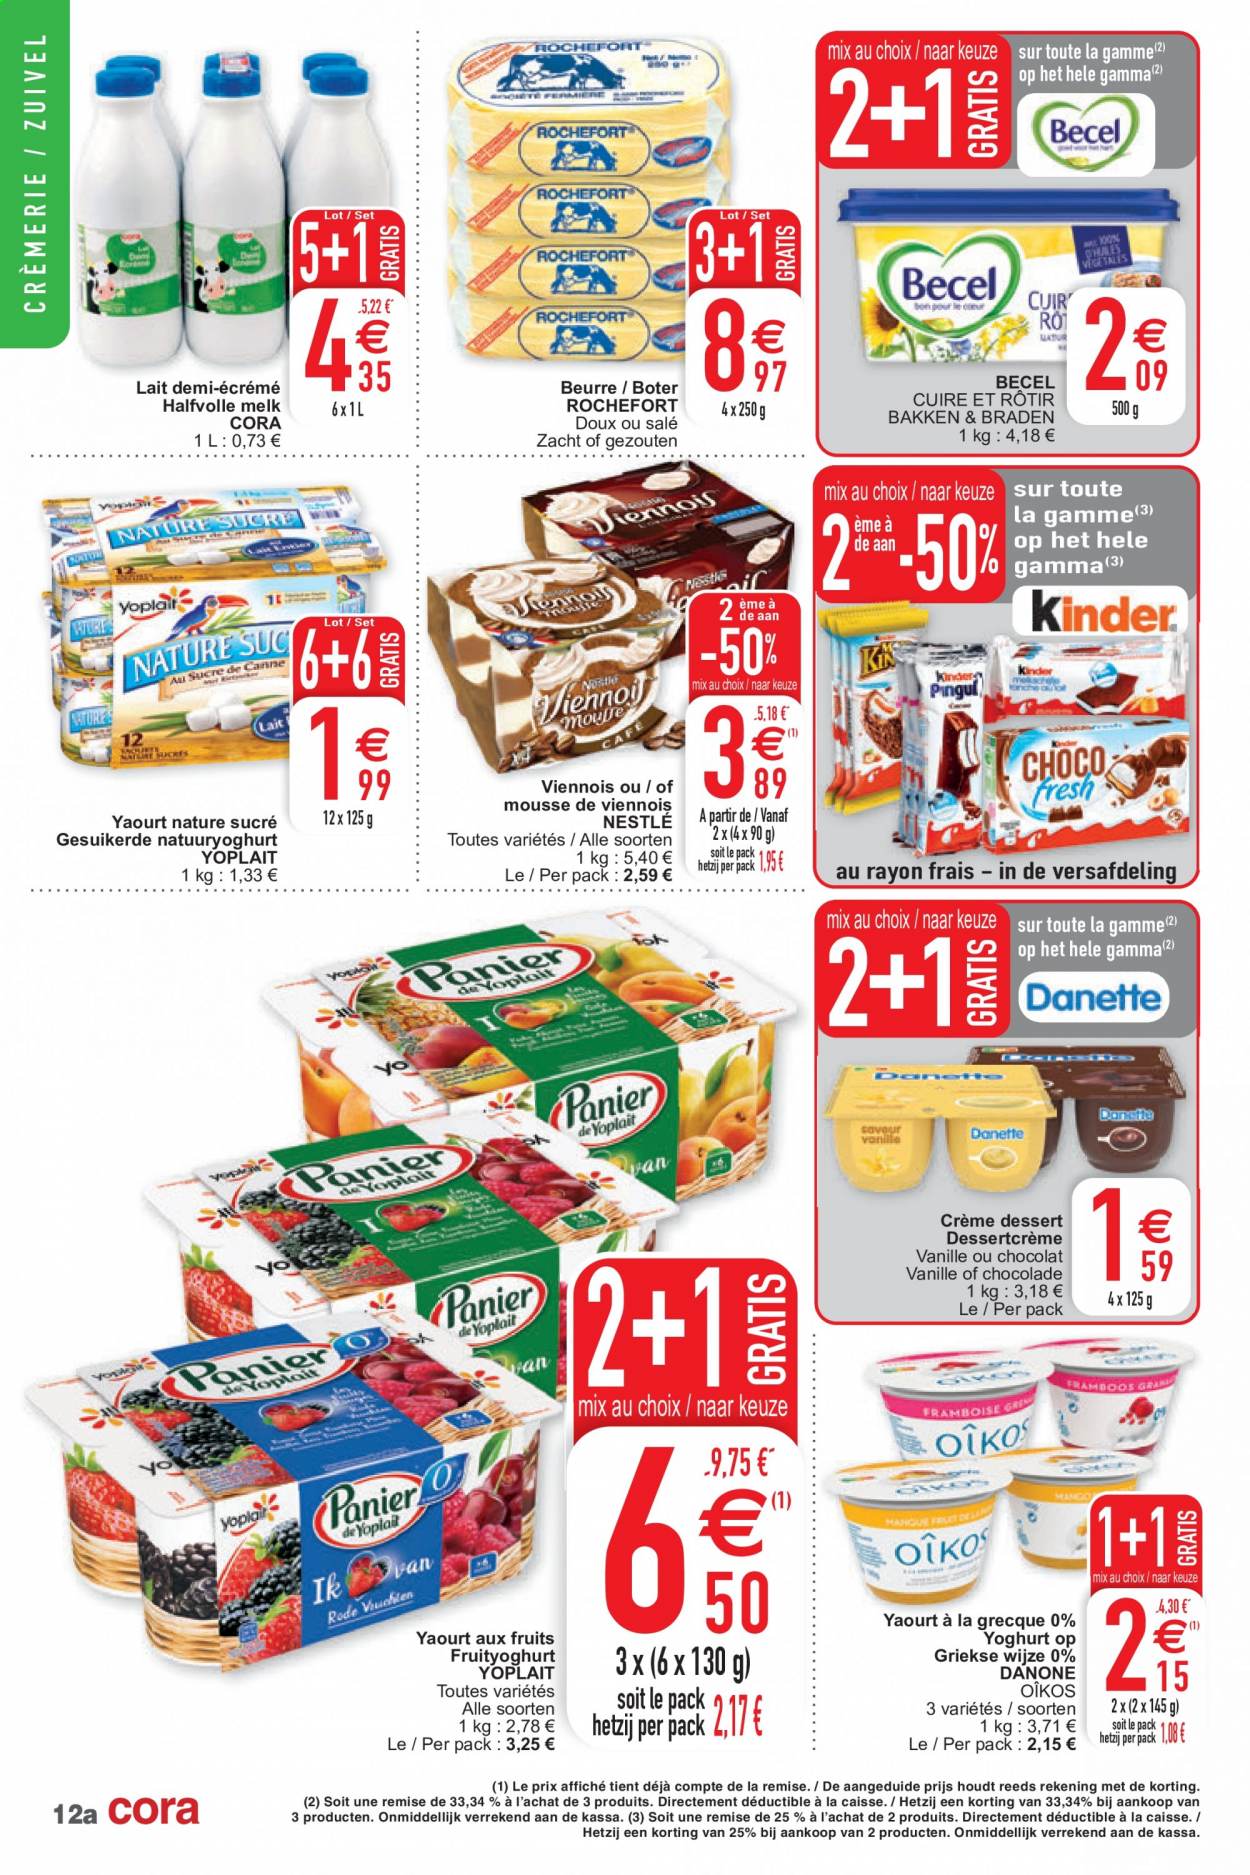 thumbnail - Catalogue Cora - 09/02/2021 - 15/02/2021 - Produits soldés - yaourt, Danone, Nestlé, Yoplait, lait, lait demi-écrémé, beurre. Page 12.